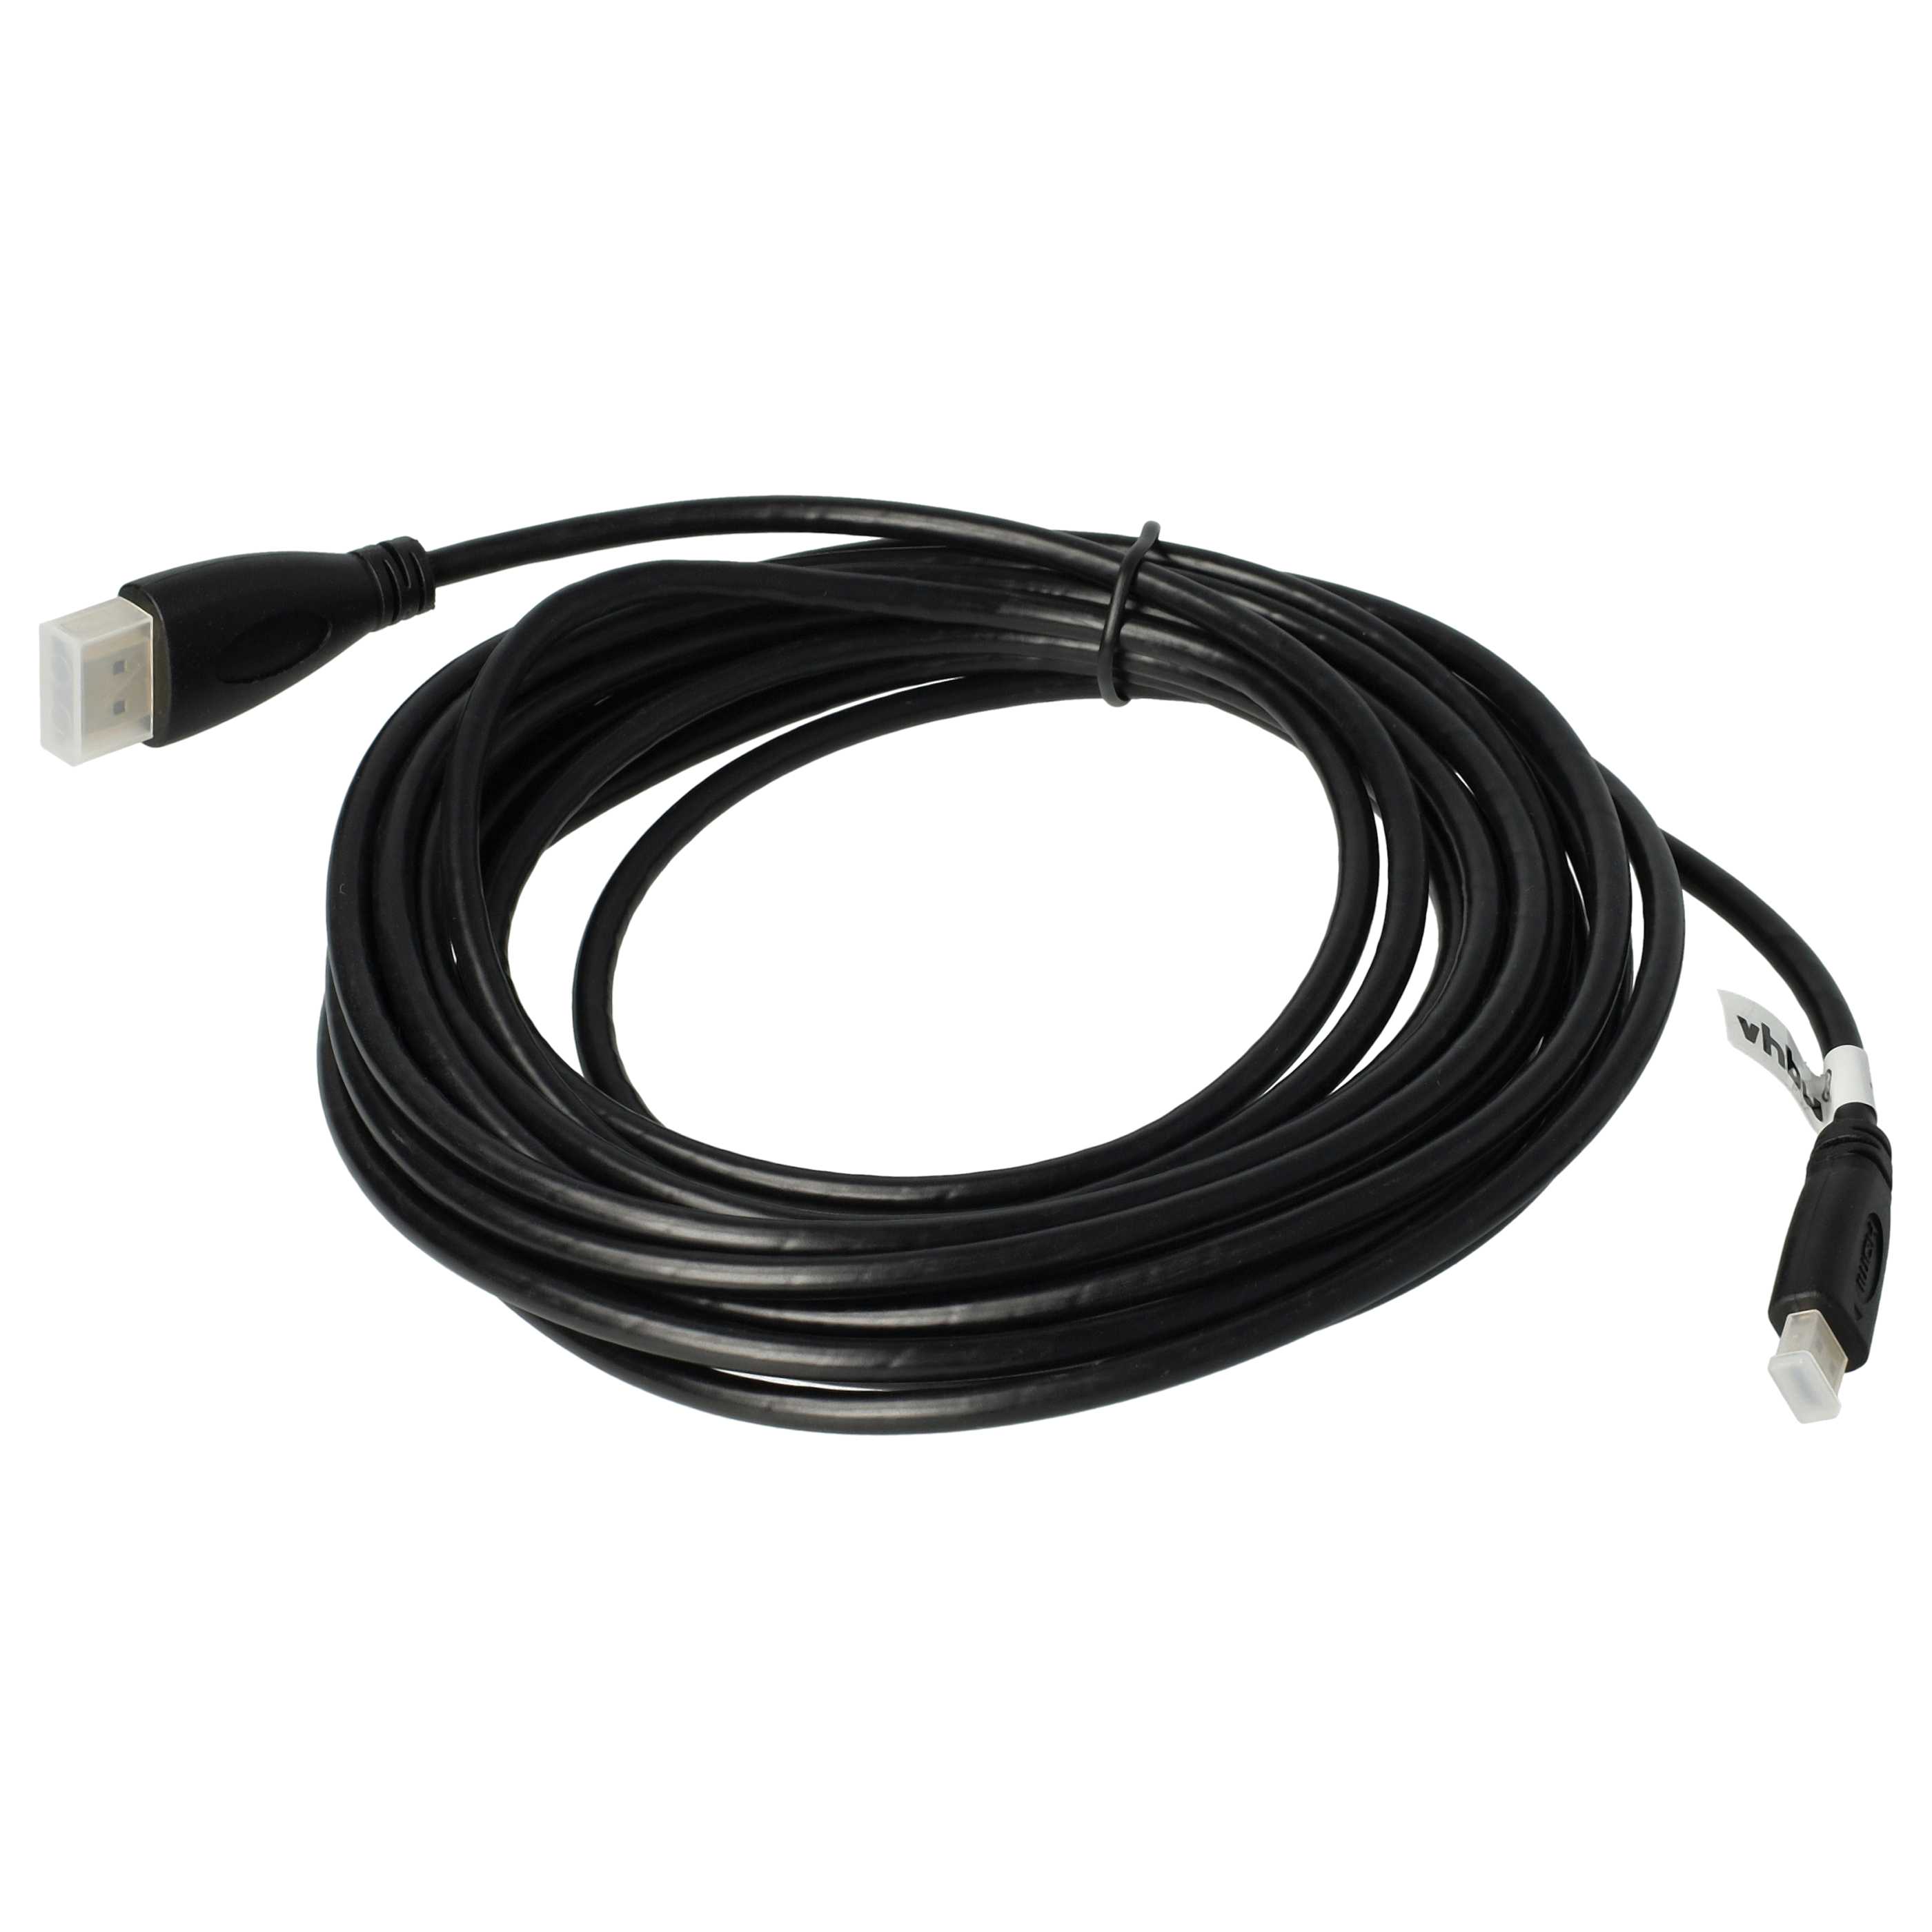 Cable HDMI, HDMI micro a HDMI 1.4 5m para tablets, smartphones, cámaras